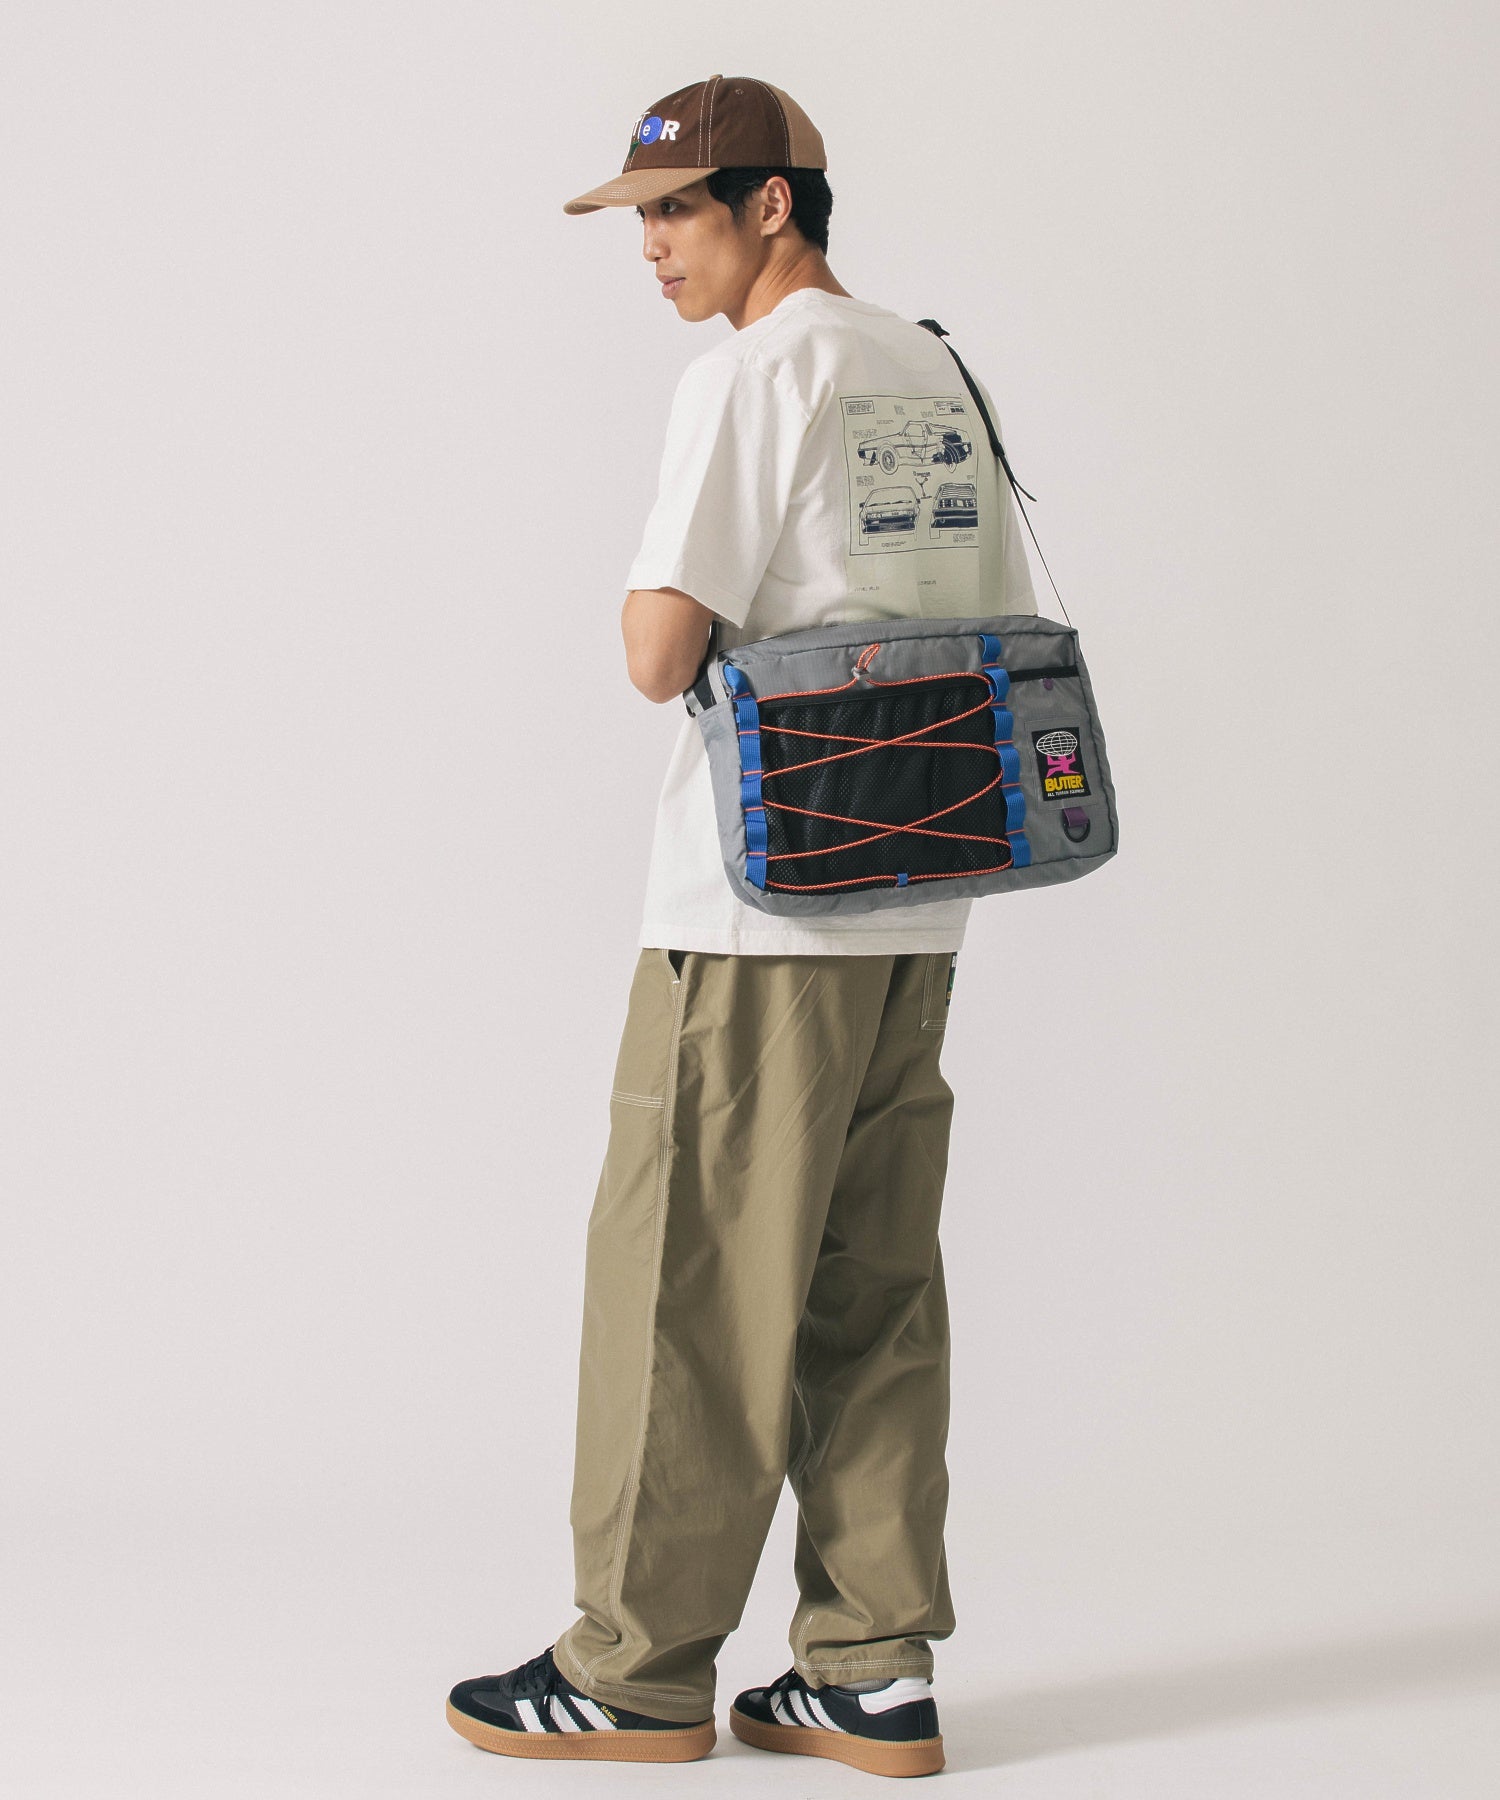 BUTTER/バター/Express Terrain Bag